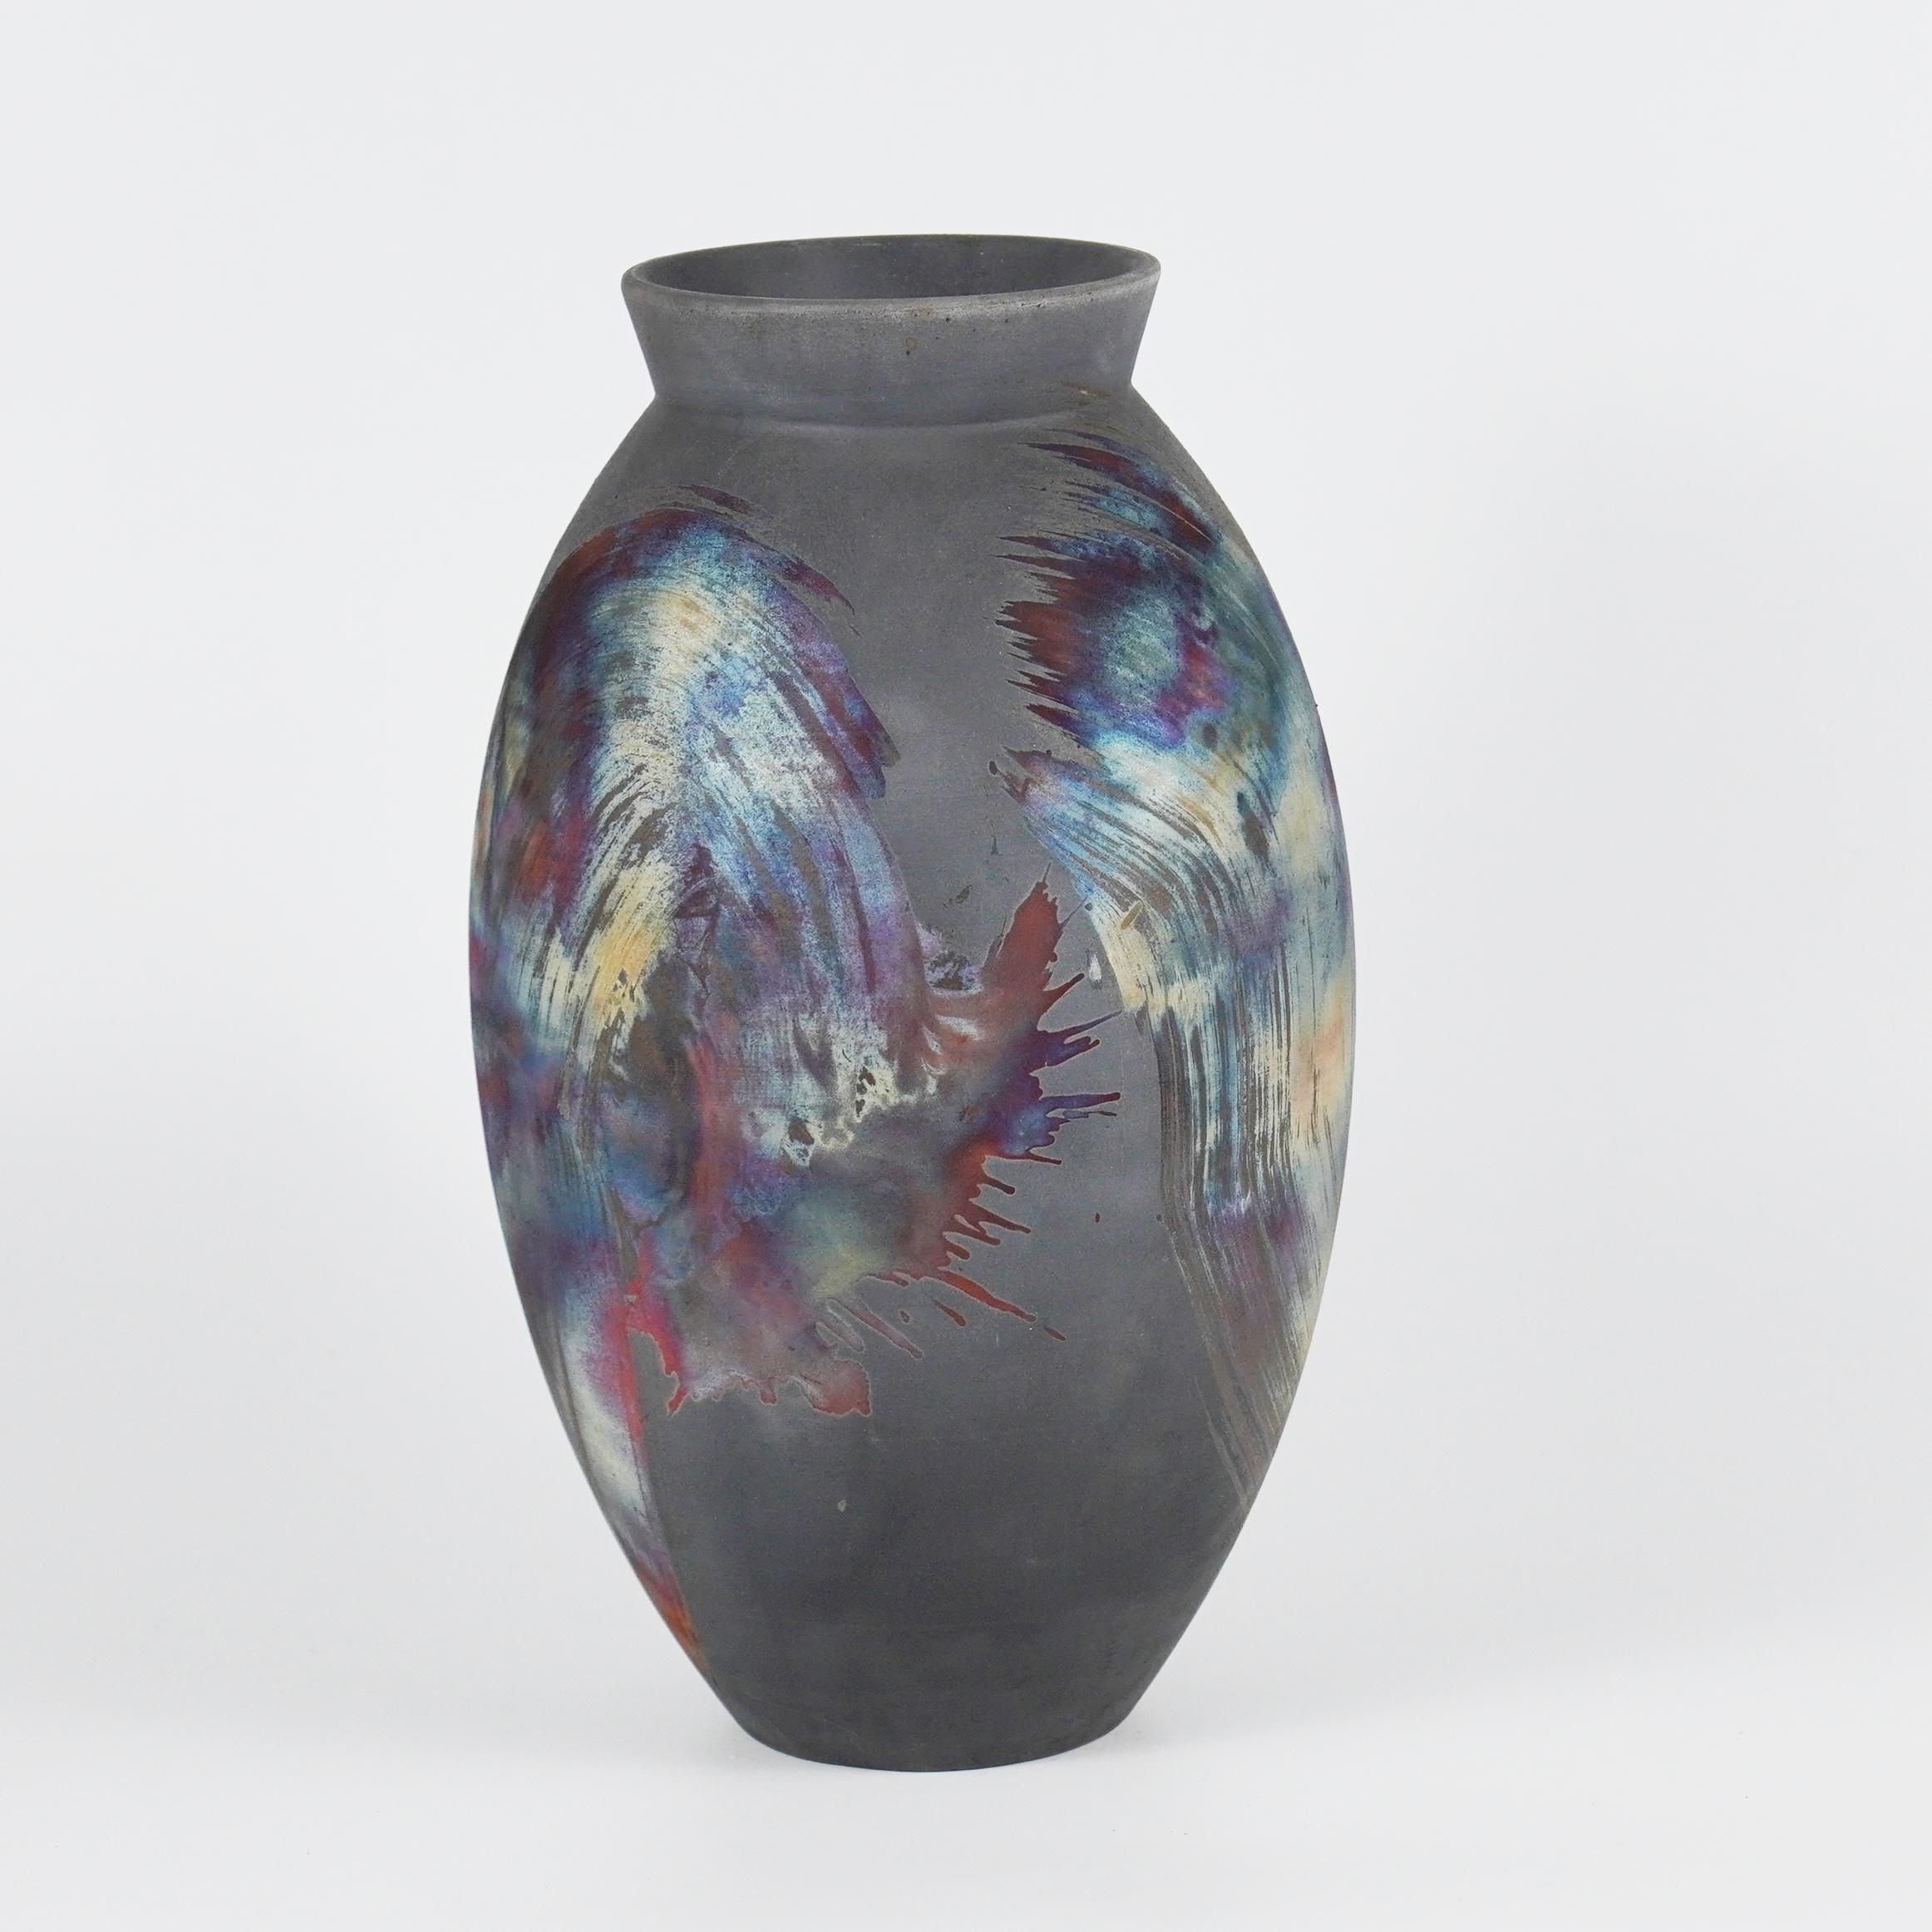 Ein faszinierender Anblick, sobald die regenbogenartigen Patinas ins Auge fallen. Die ovale Vase ist ein hohes, tropfenförmiges Design, das sich am besten eignet, um einem Innenraum einen Hauch von Eleganz und Faszination zu verleihen. Mit der